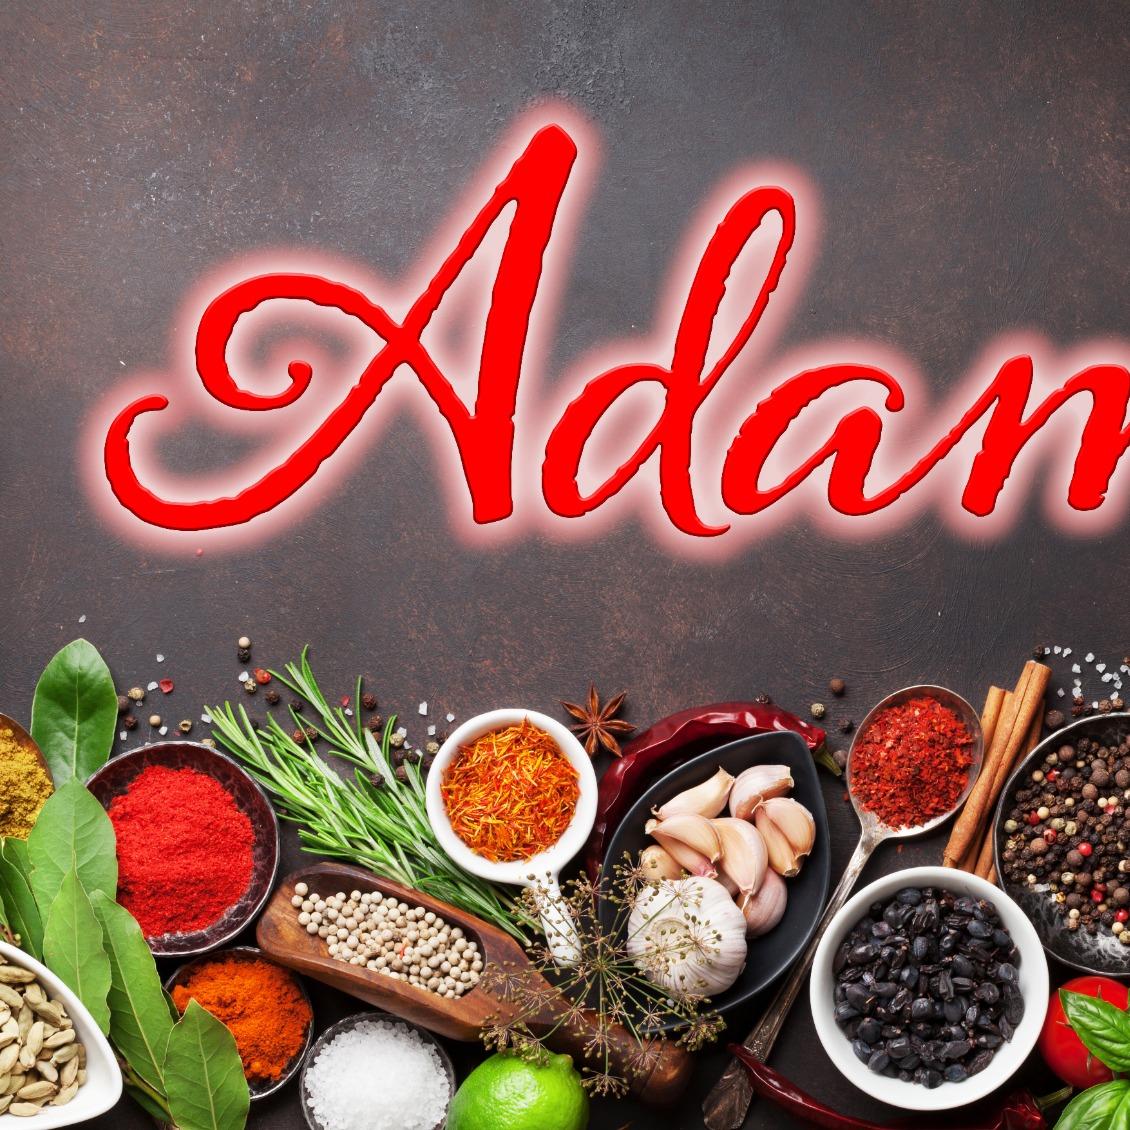 Restaurant "Adam